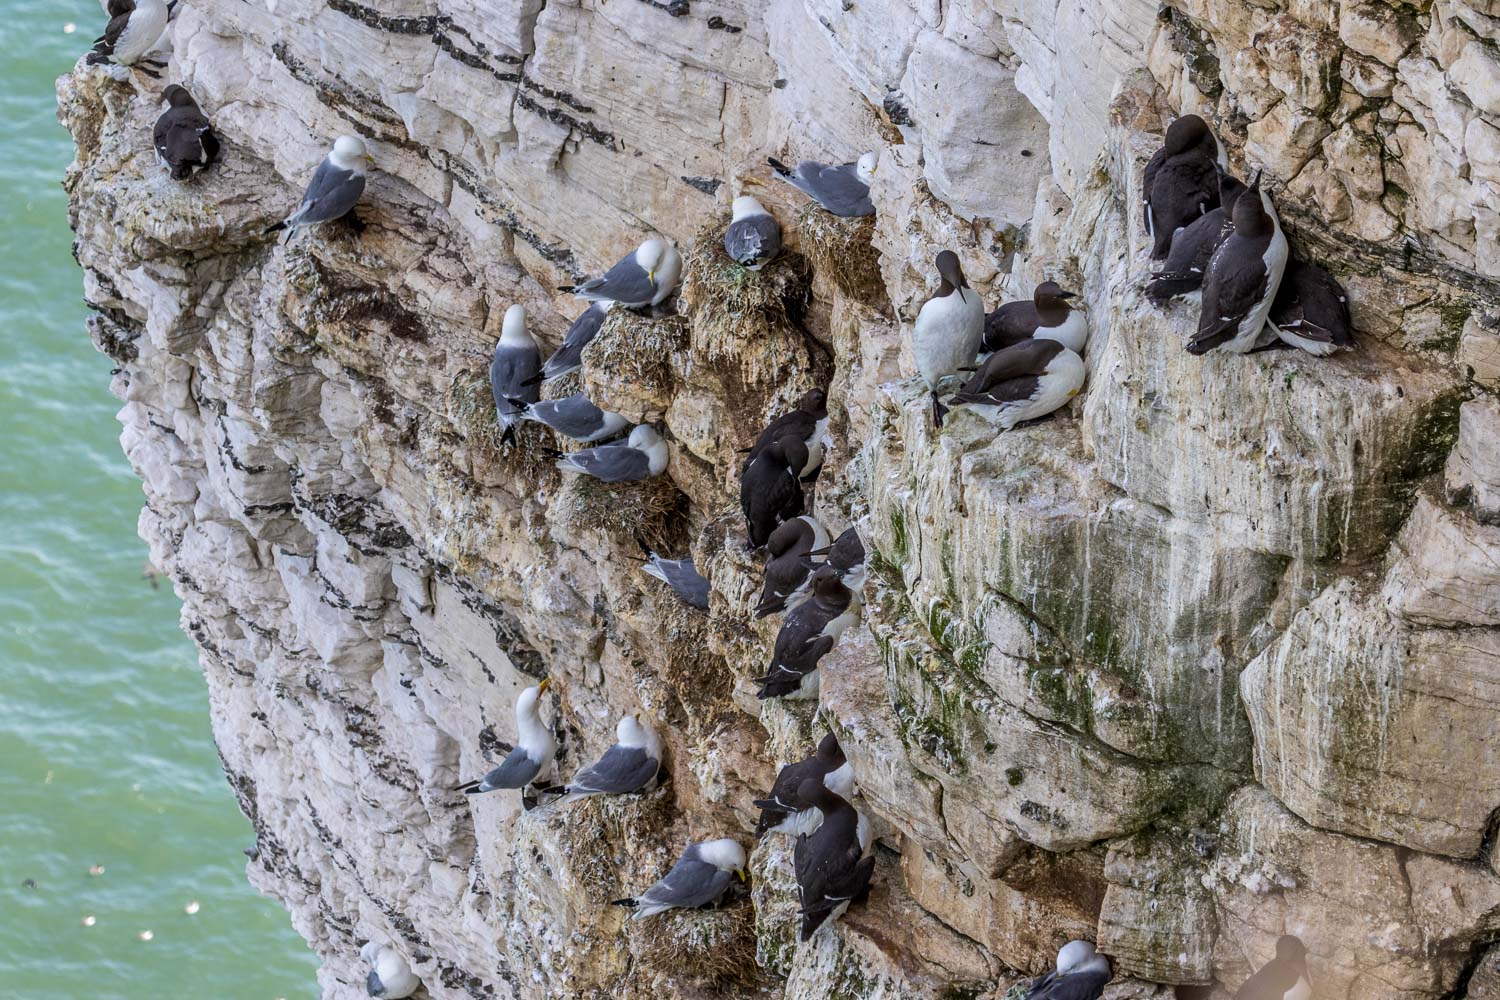 Bempton Cliffs birds